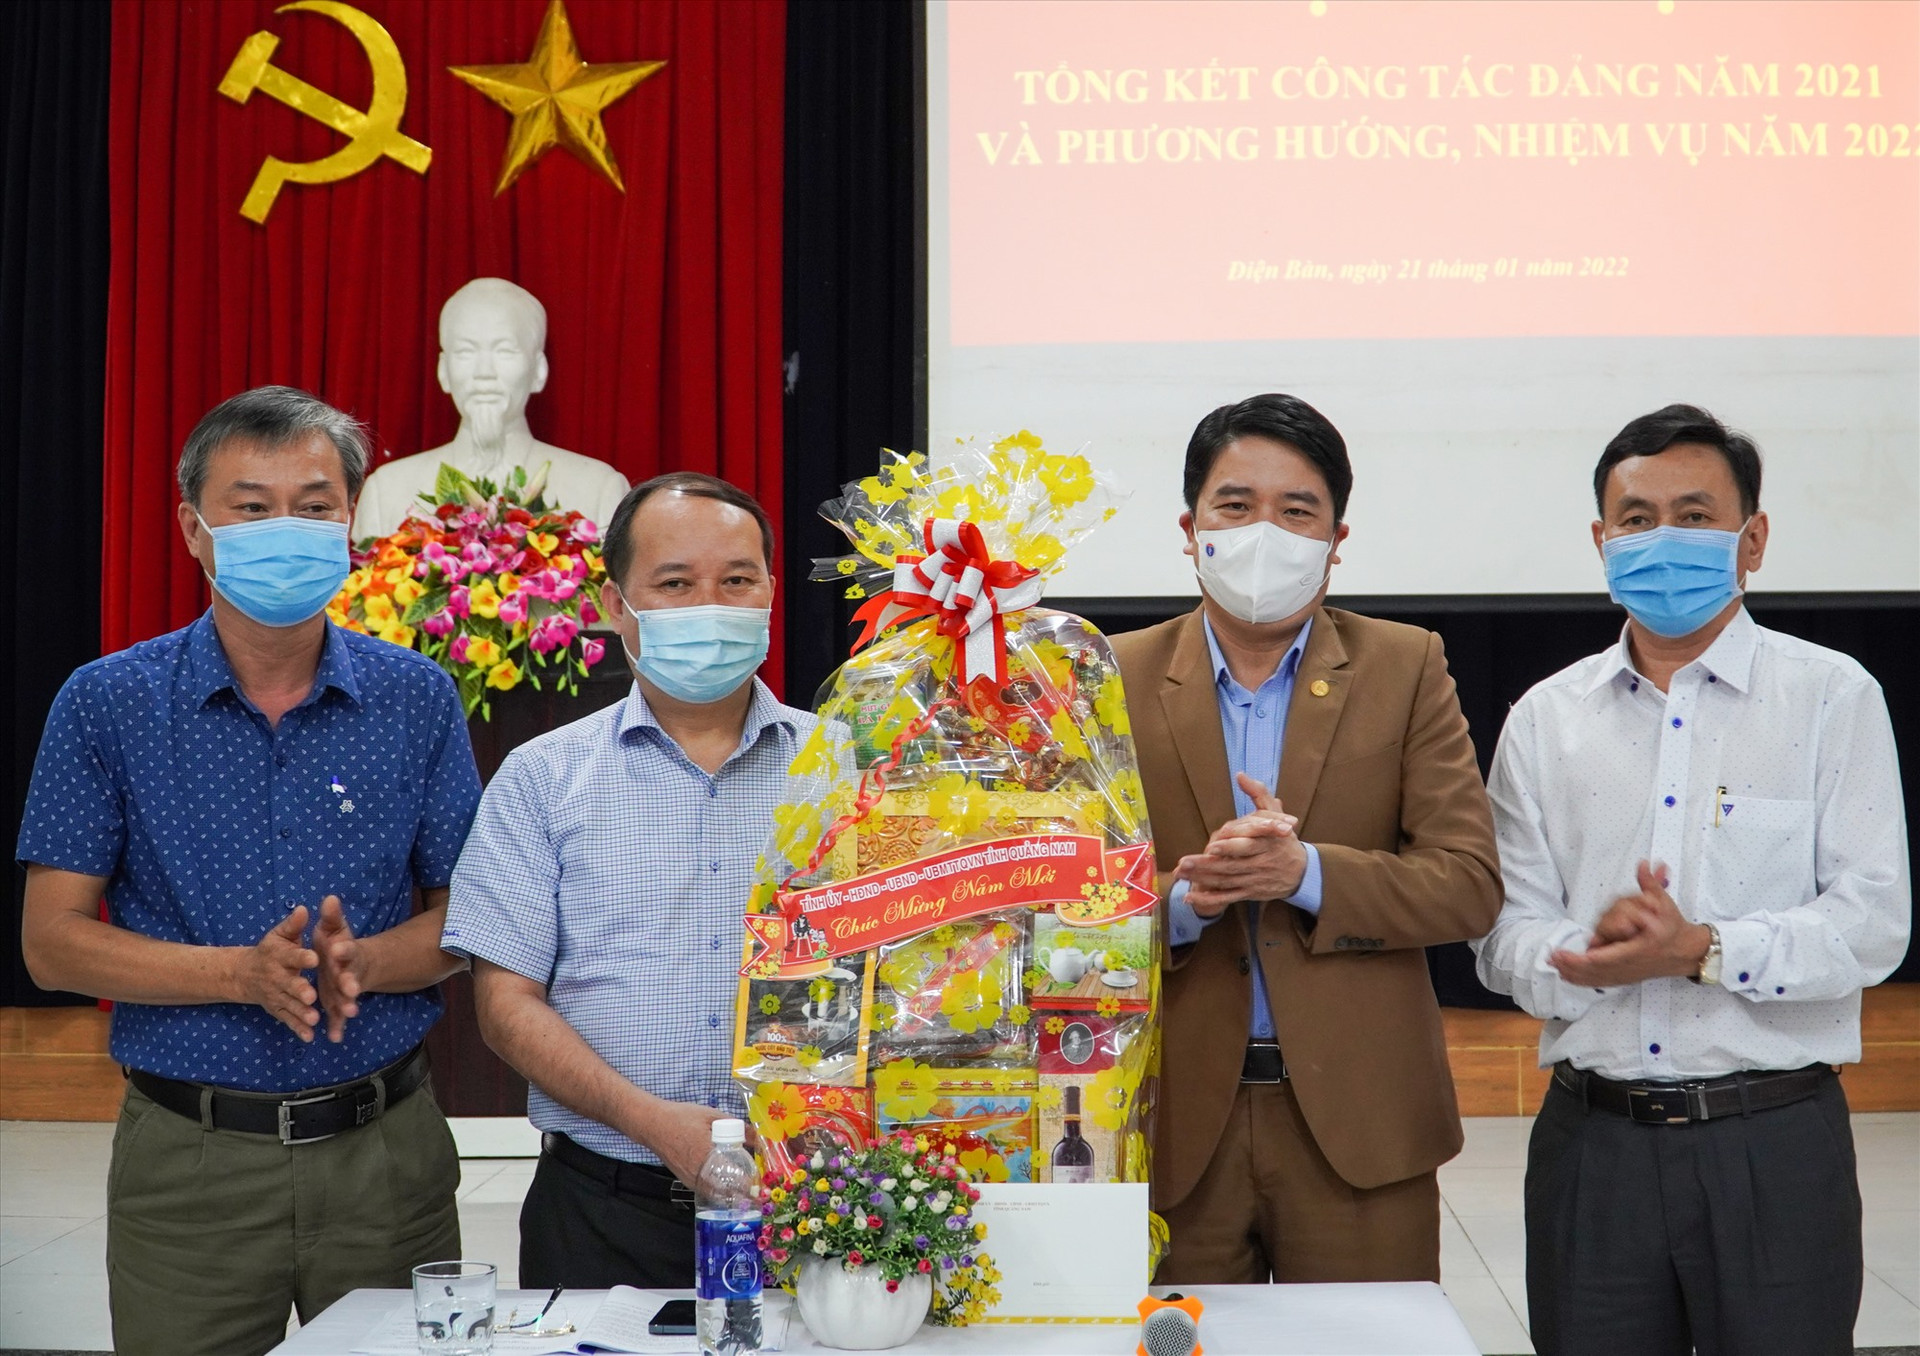 Phó Chủ tịch UBND tỉnh Trần Văn Tân chúc Tết tặng quà tết đội ngũ y bác sĩ tại Bệnh viện Đa khoa khu vực Quảng Nam. Ảnh: HỒ QUÂN